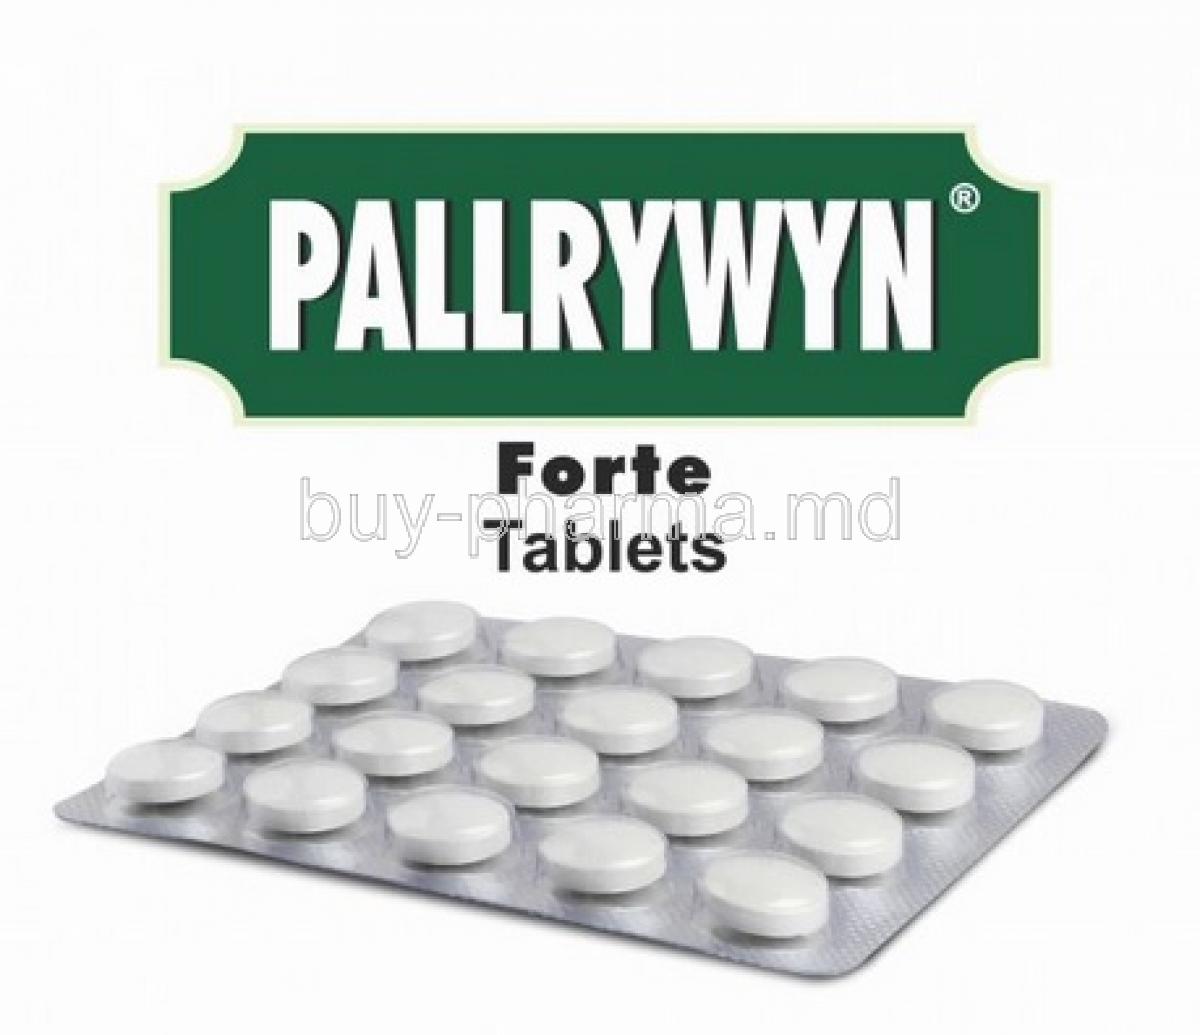 Pallrywyn Forte box and tablets